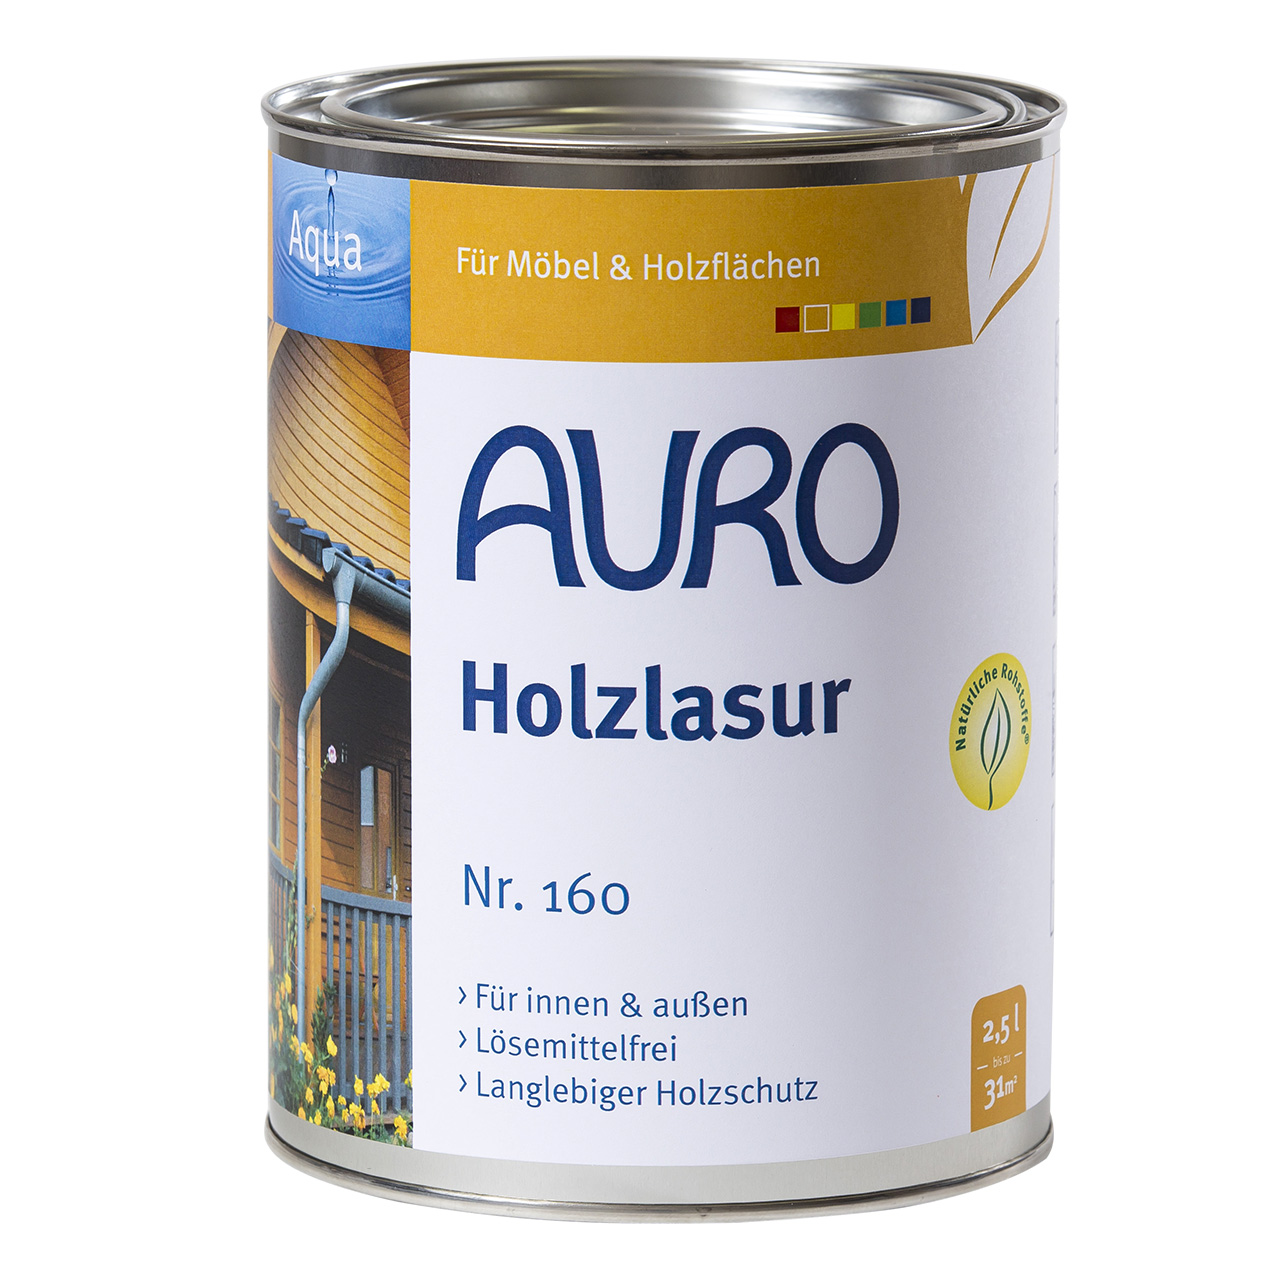 Auro Holzlasur Nr. 160 azur, 2,5L